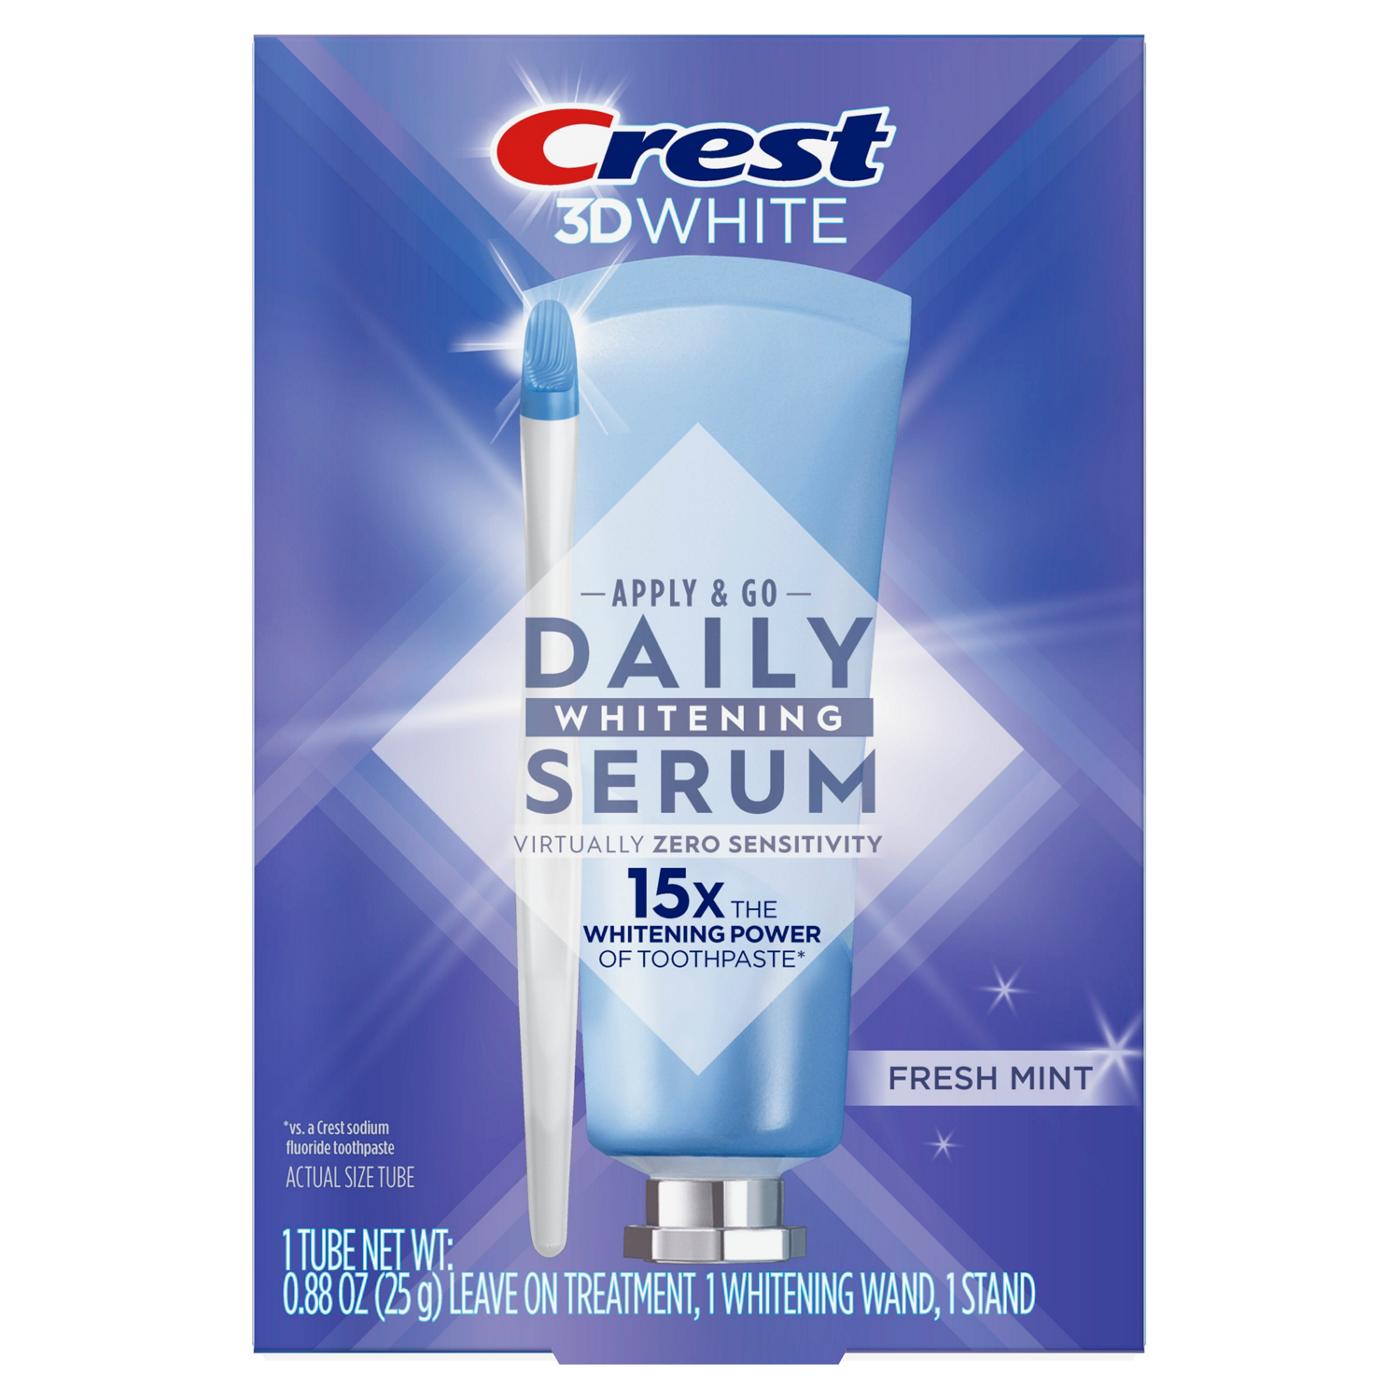 Crest 3D White Apply & Go Daily Whitening Serum Kit - Fresh Mint; image 10 of 10